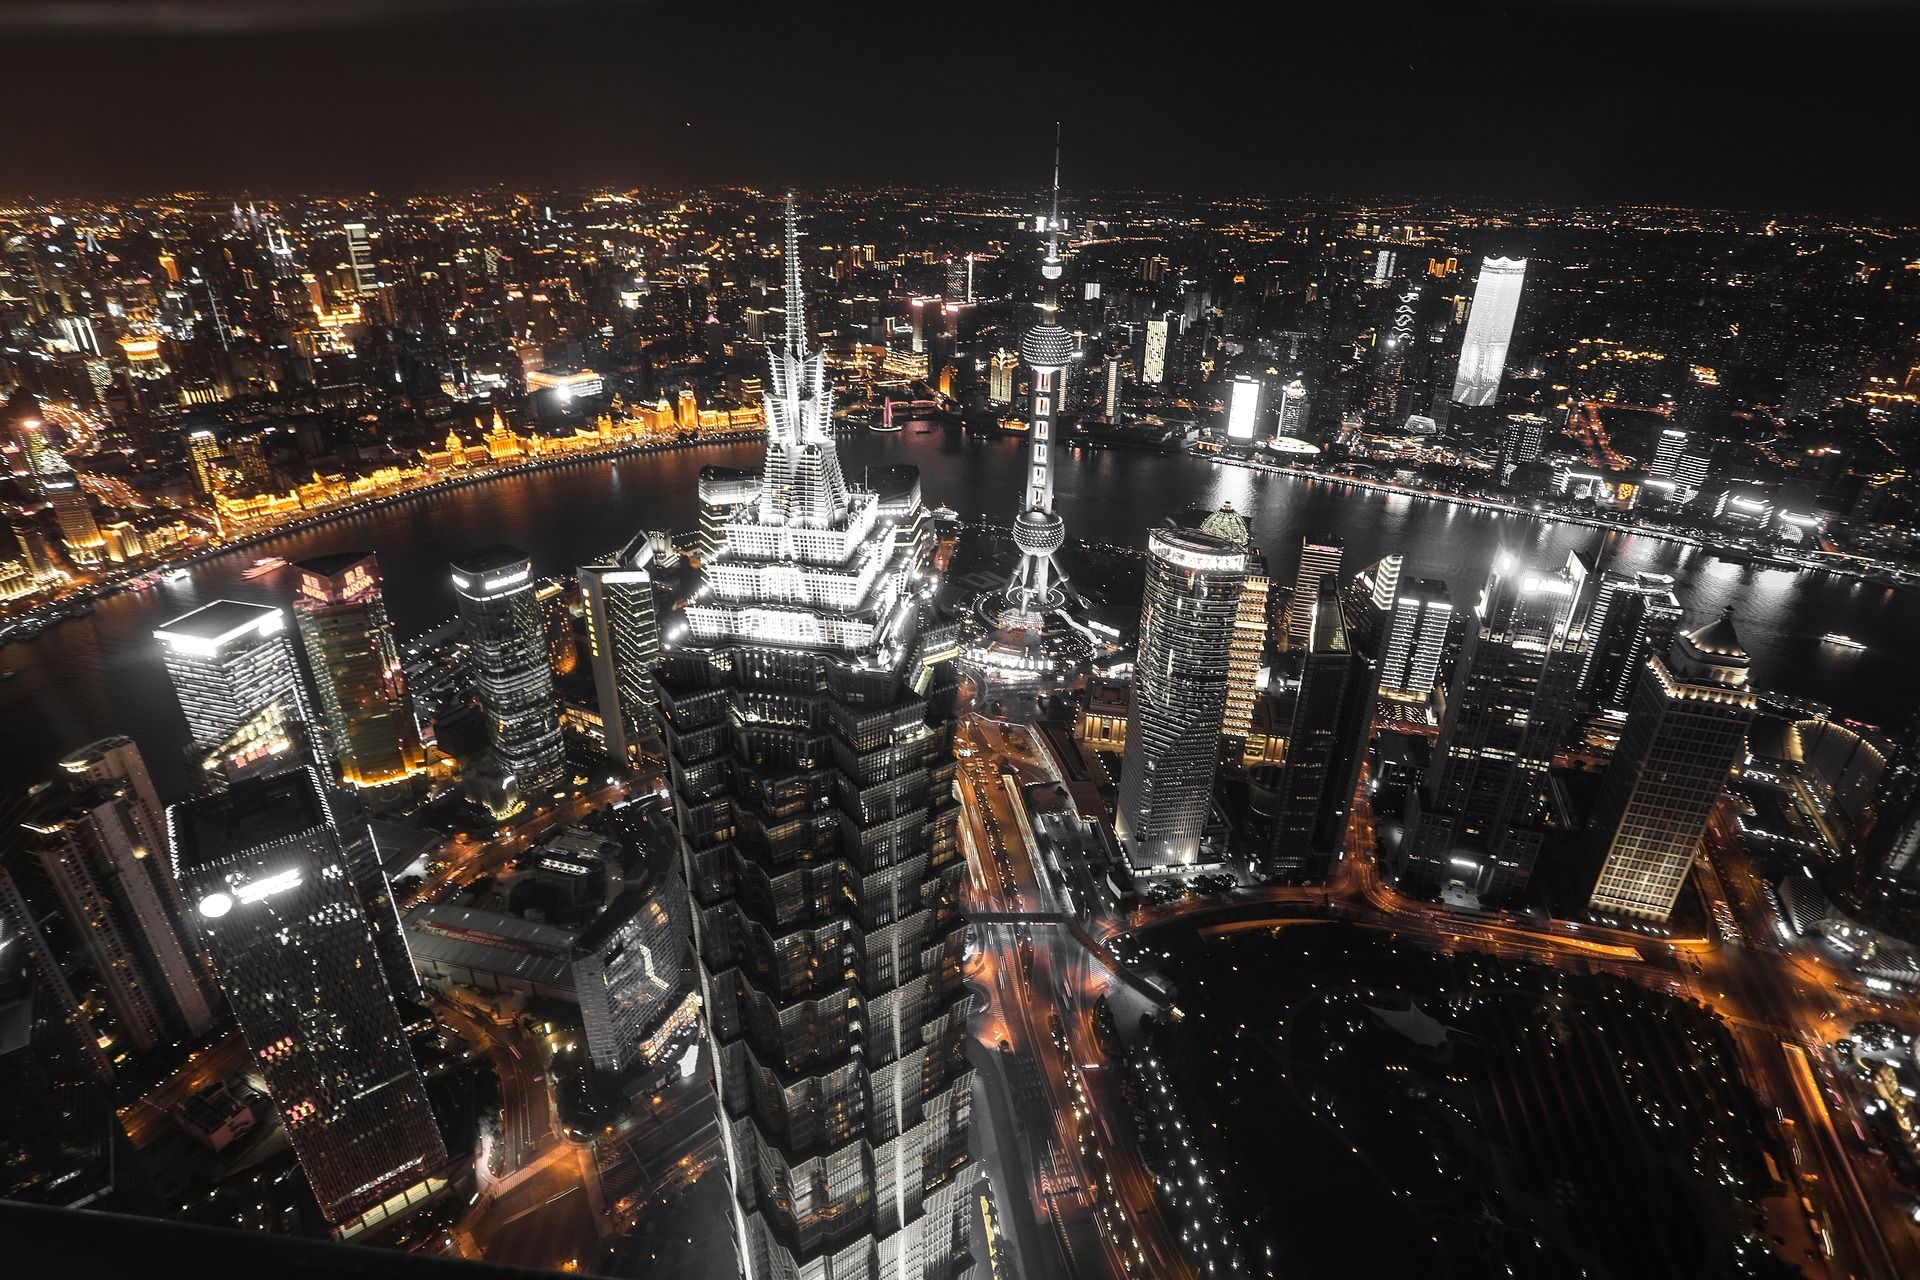 Night view of Shanghai